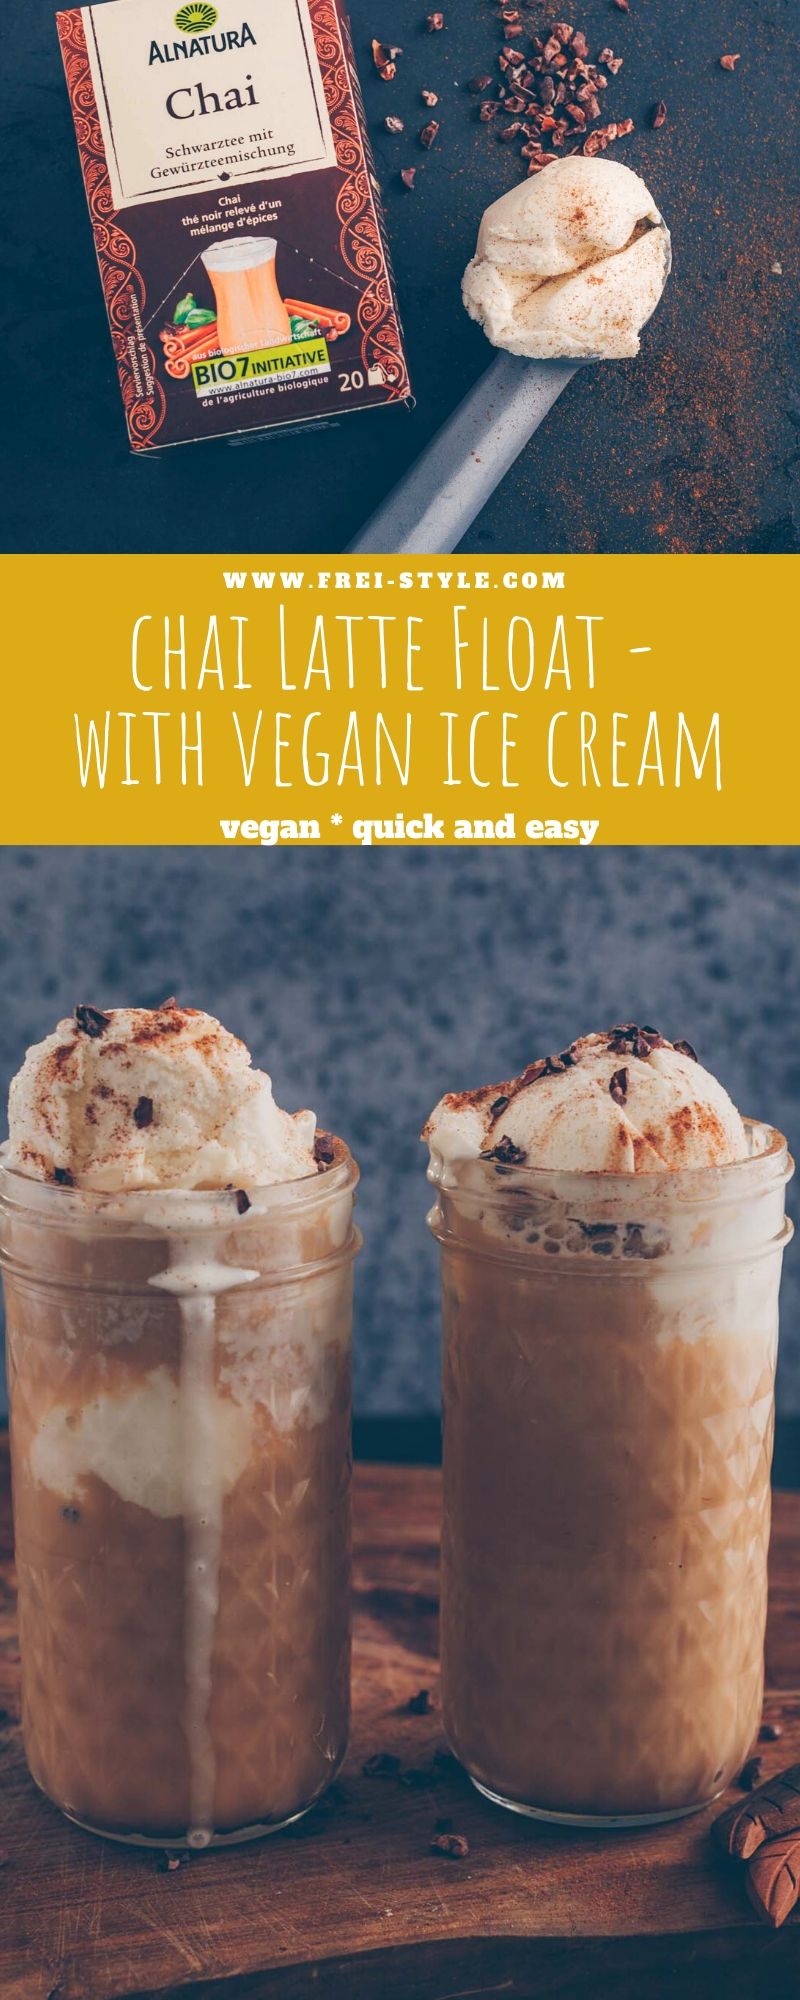 Chai Latte Float - with vegan ice cream